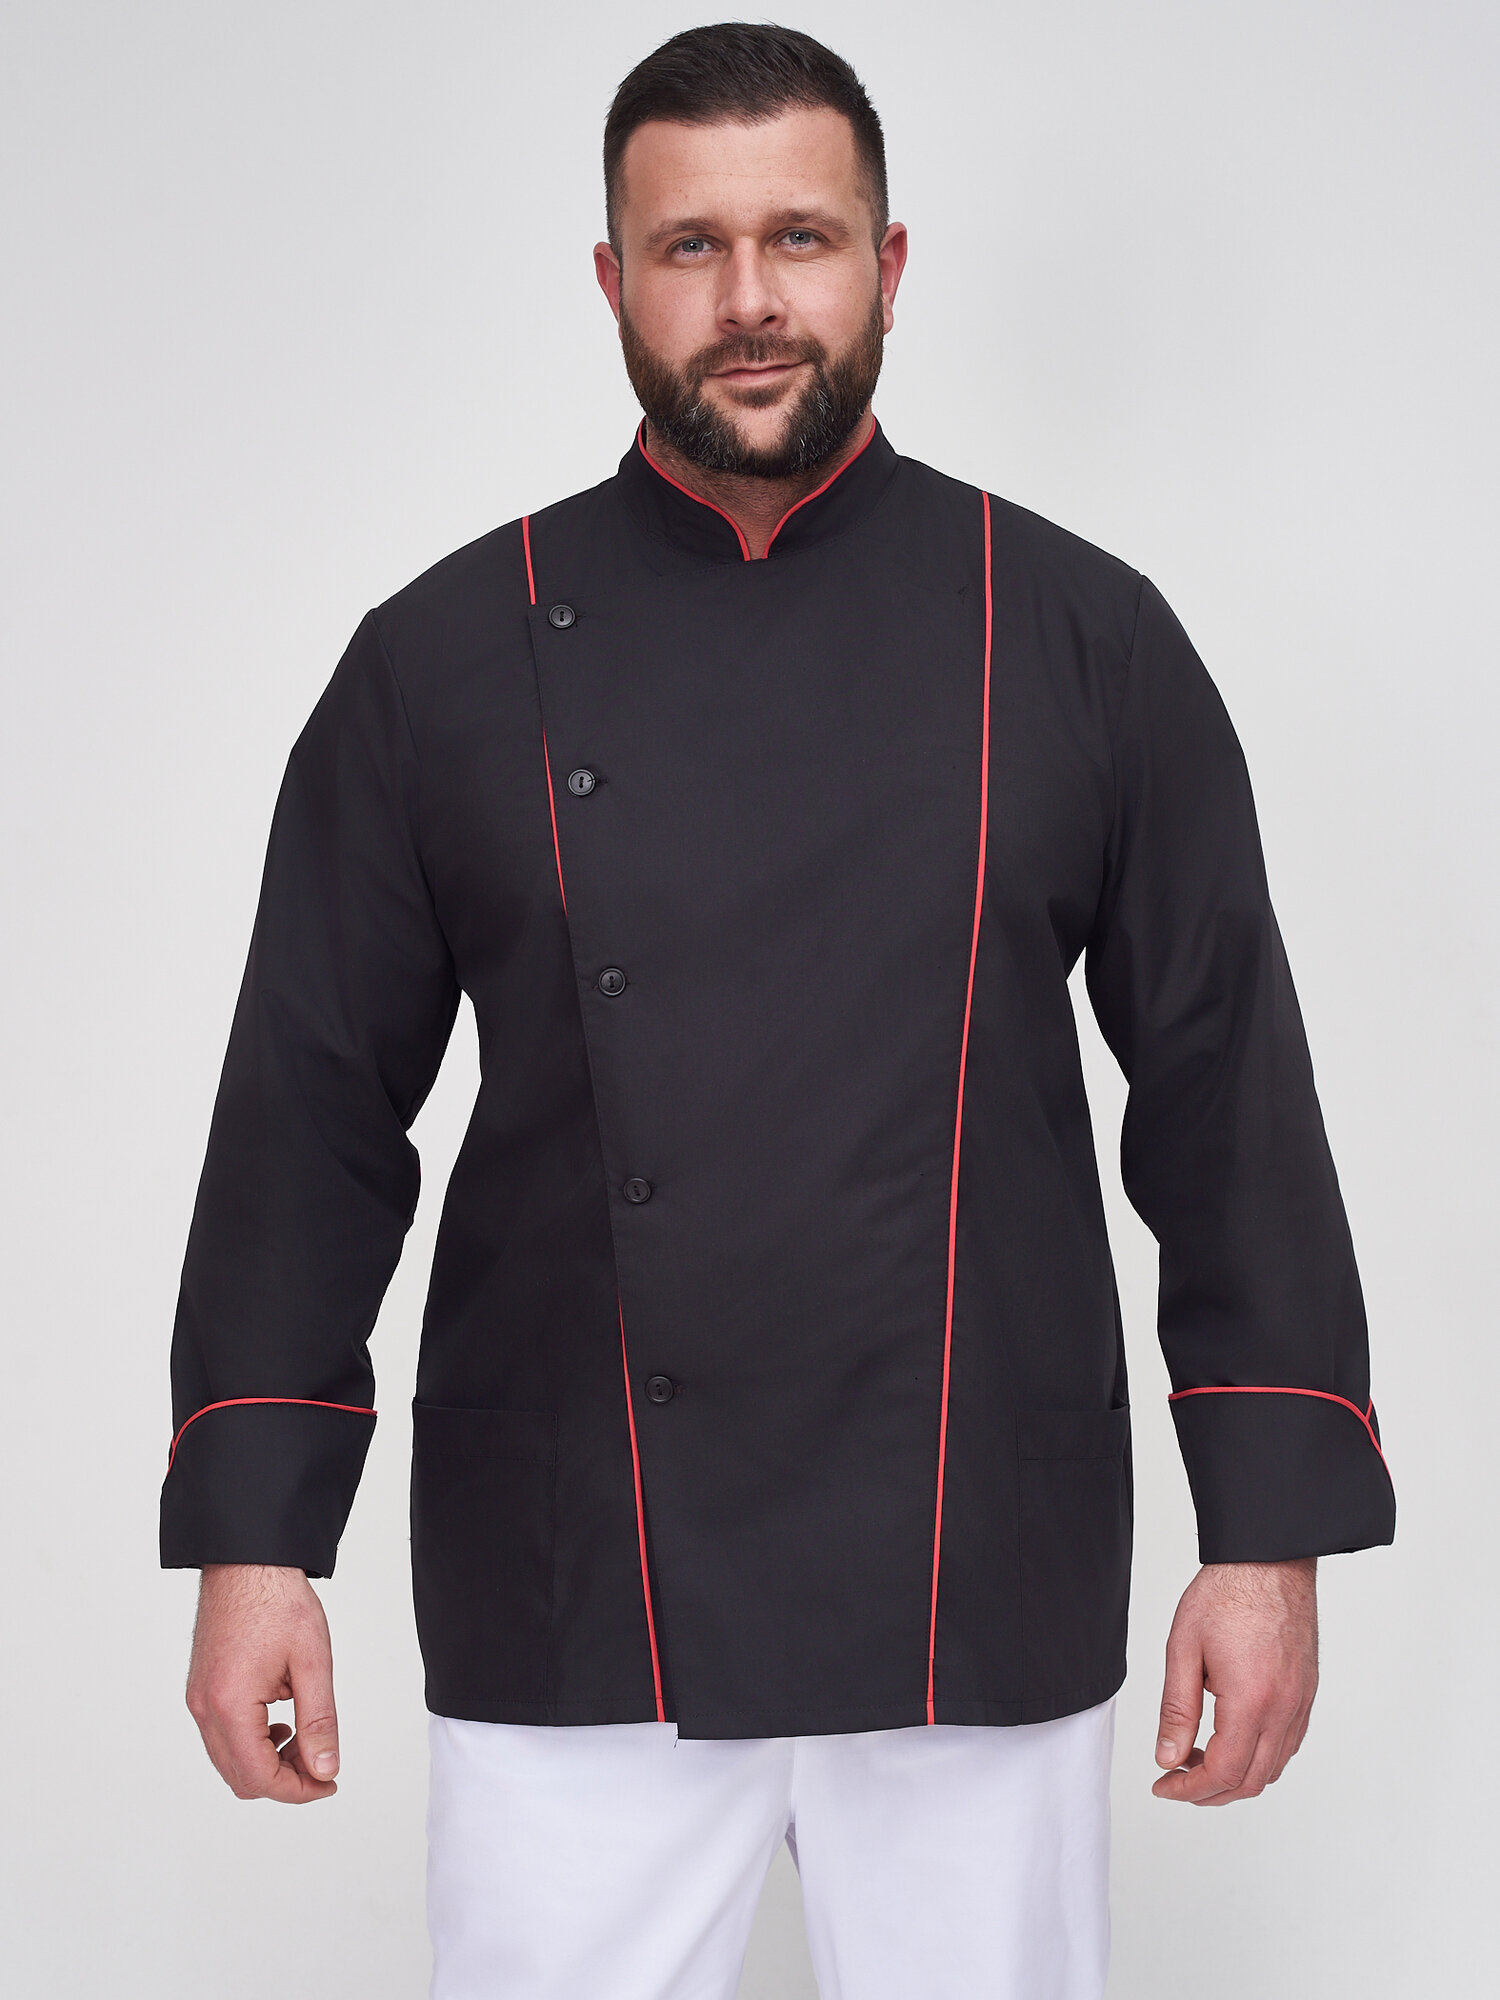 Поварская рубашка 026.1.1 Uniformed, ткань тиси, рукав длинный, на пуговицах, цвет черный, отделка красная, размер 56-58